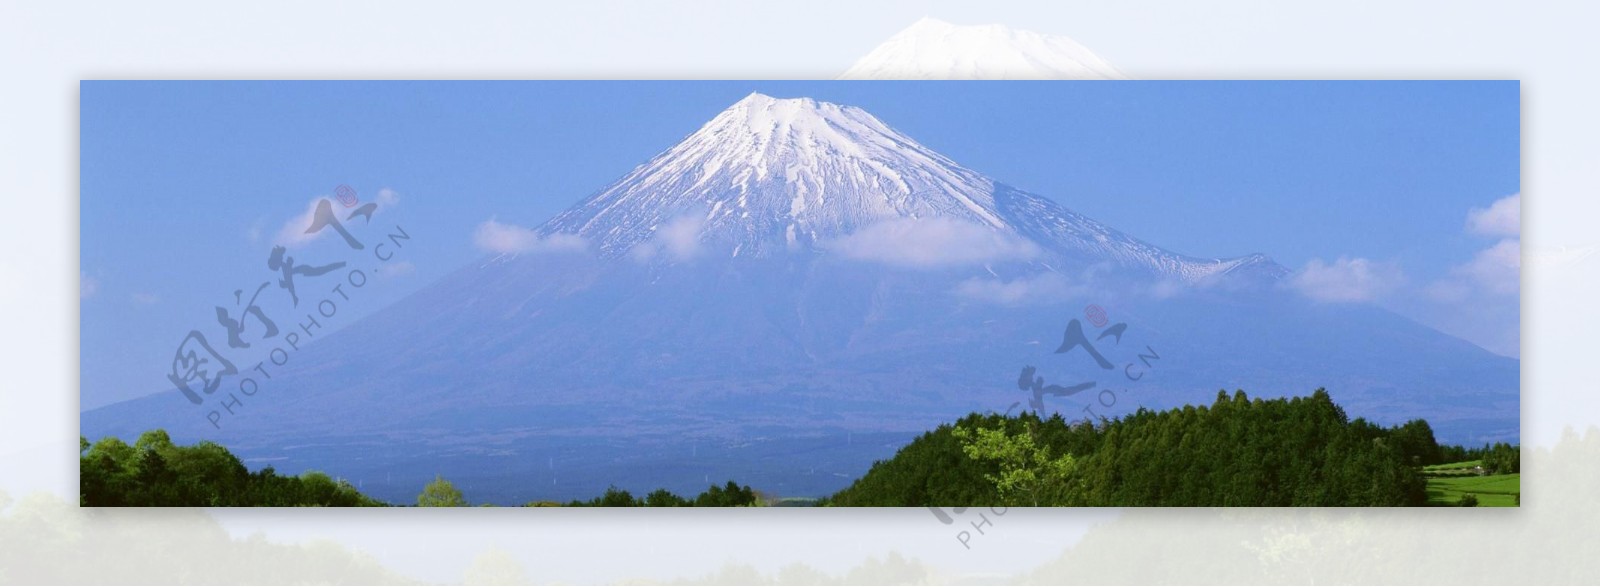 富士山banner创意设计